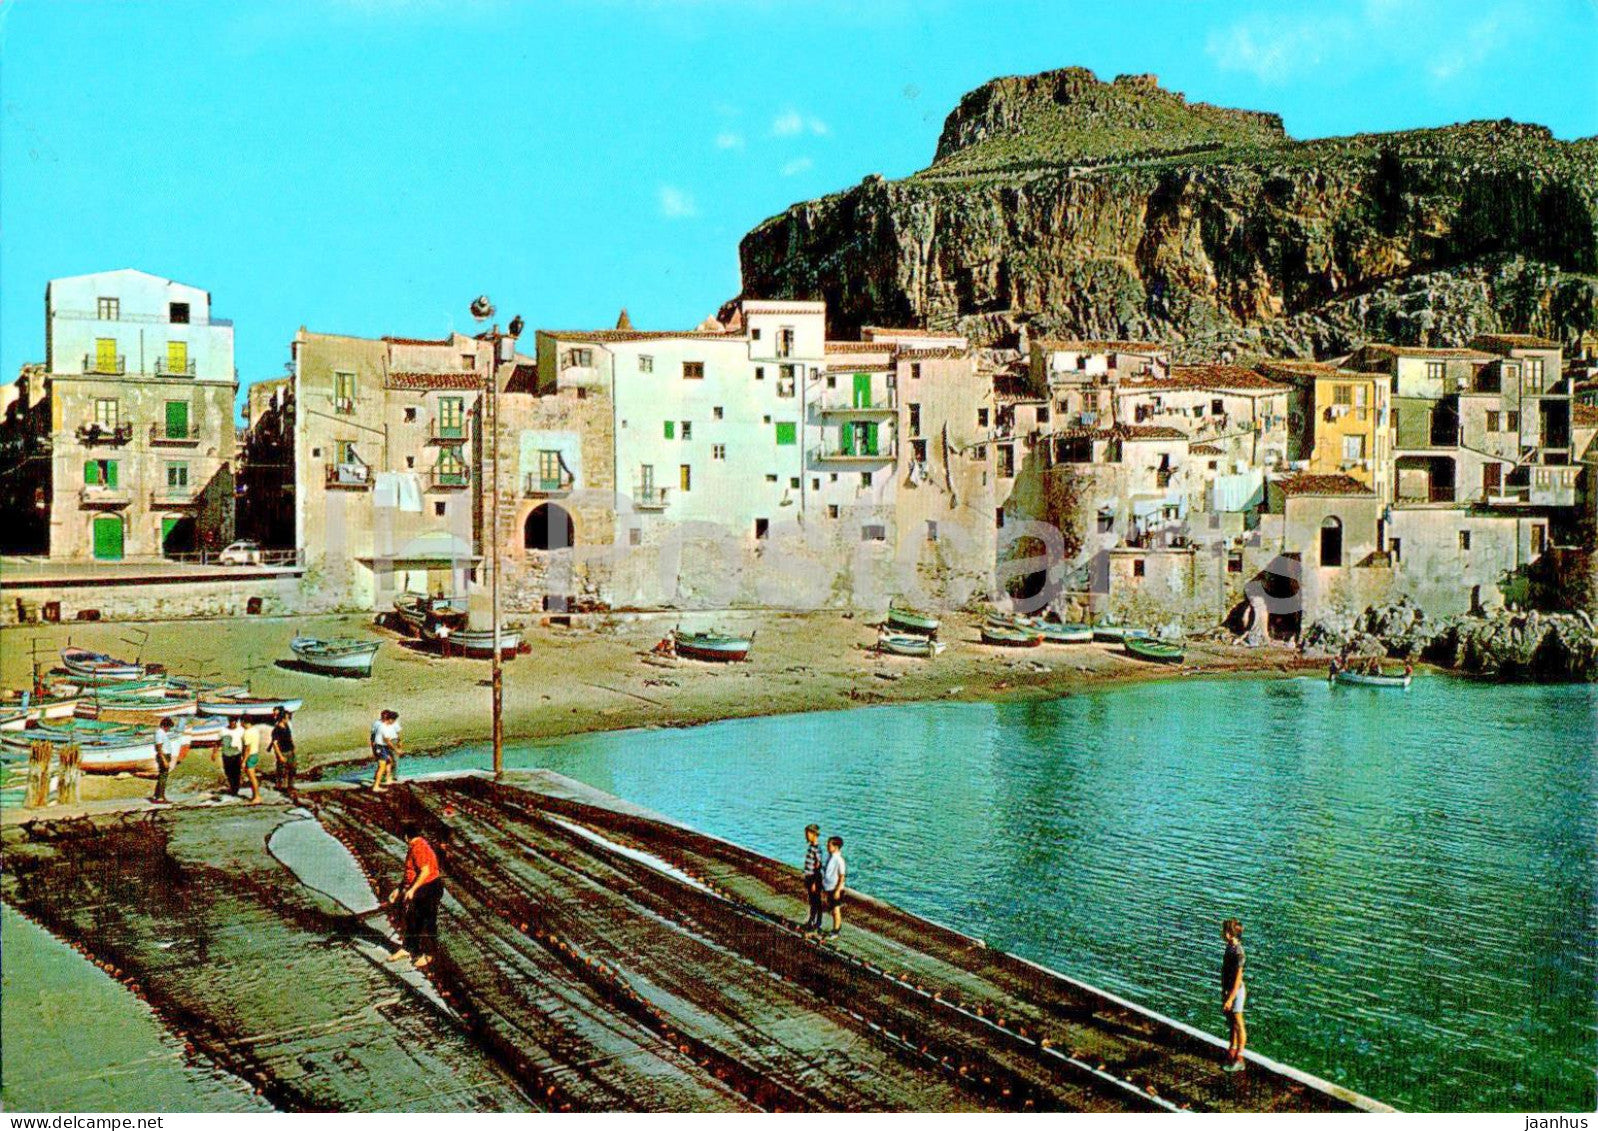 Cefalu - La Marina - 1505 - Italy - unused - JH Postcards